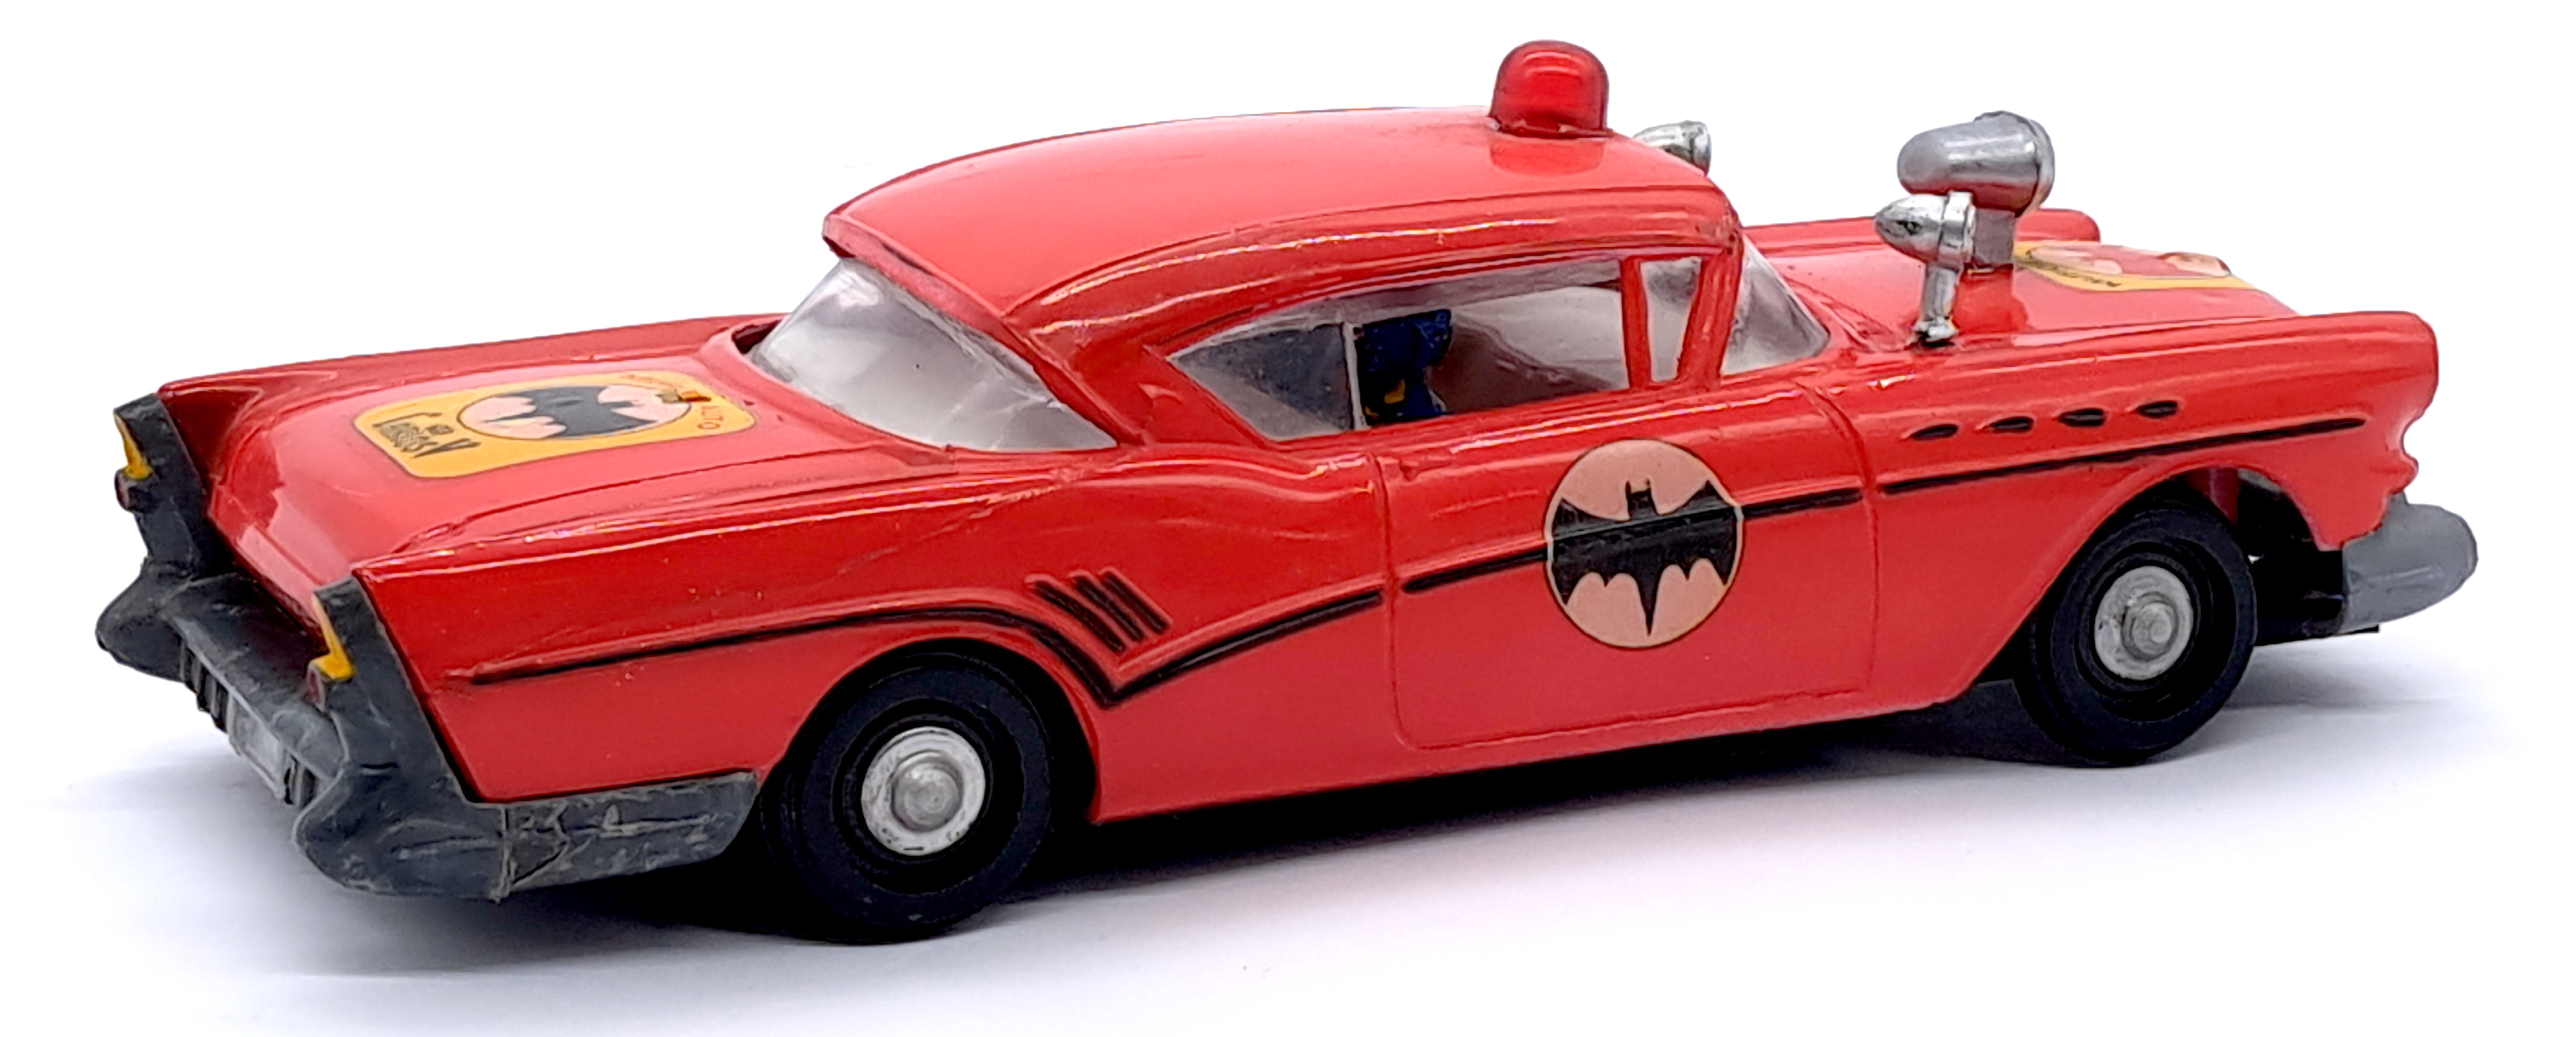 Carlos V Murciel Auto (Argentina) Vintage Batman car - Image 2 of 3